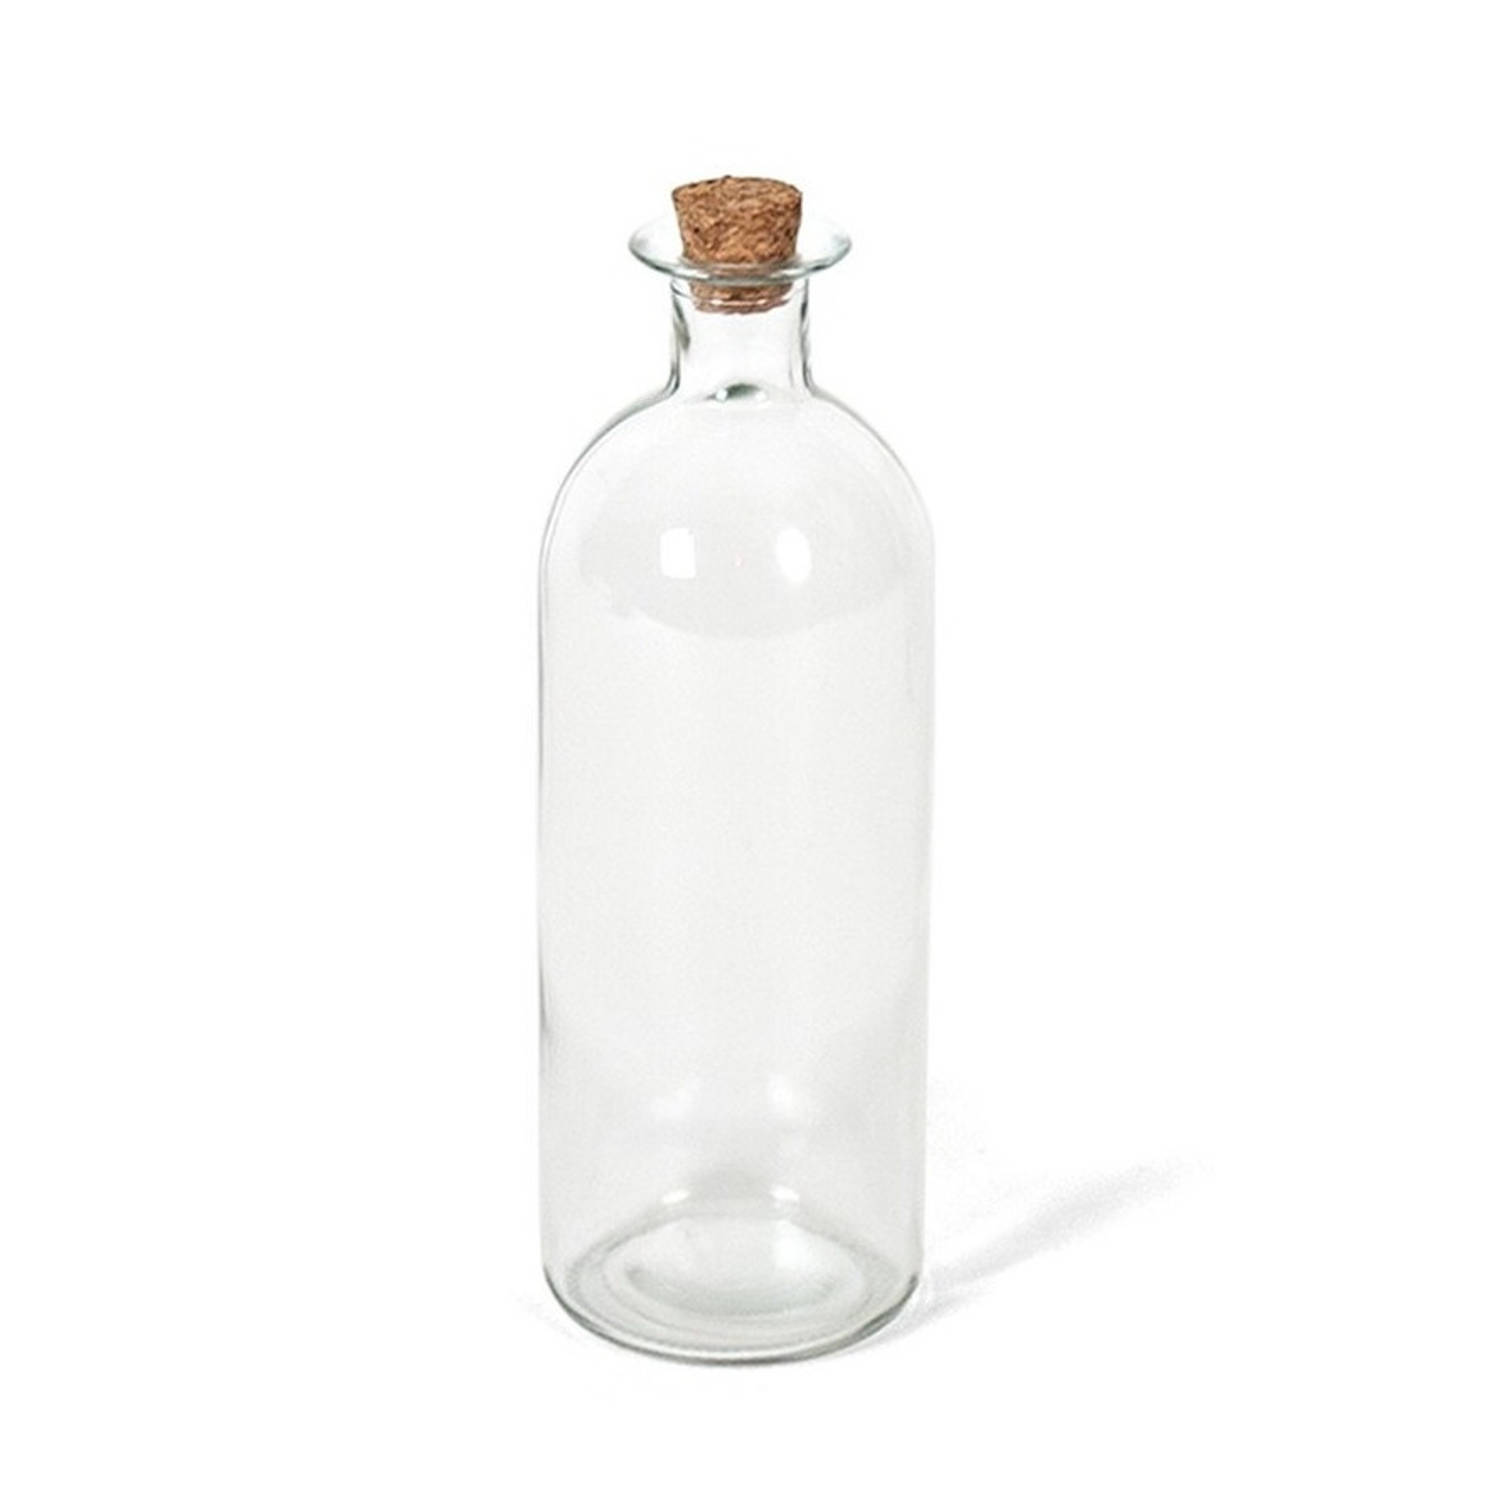 1x Transparante glazen olie/azijn flessen met kurken dop 490 ml - Glazen flessen met kurk